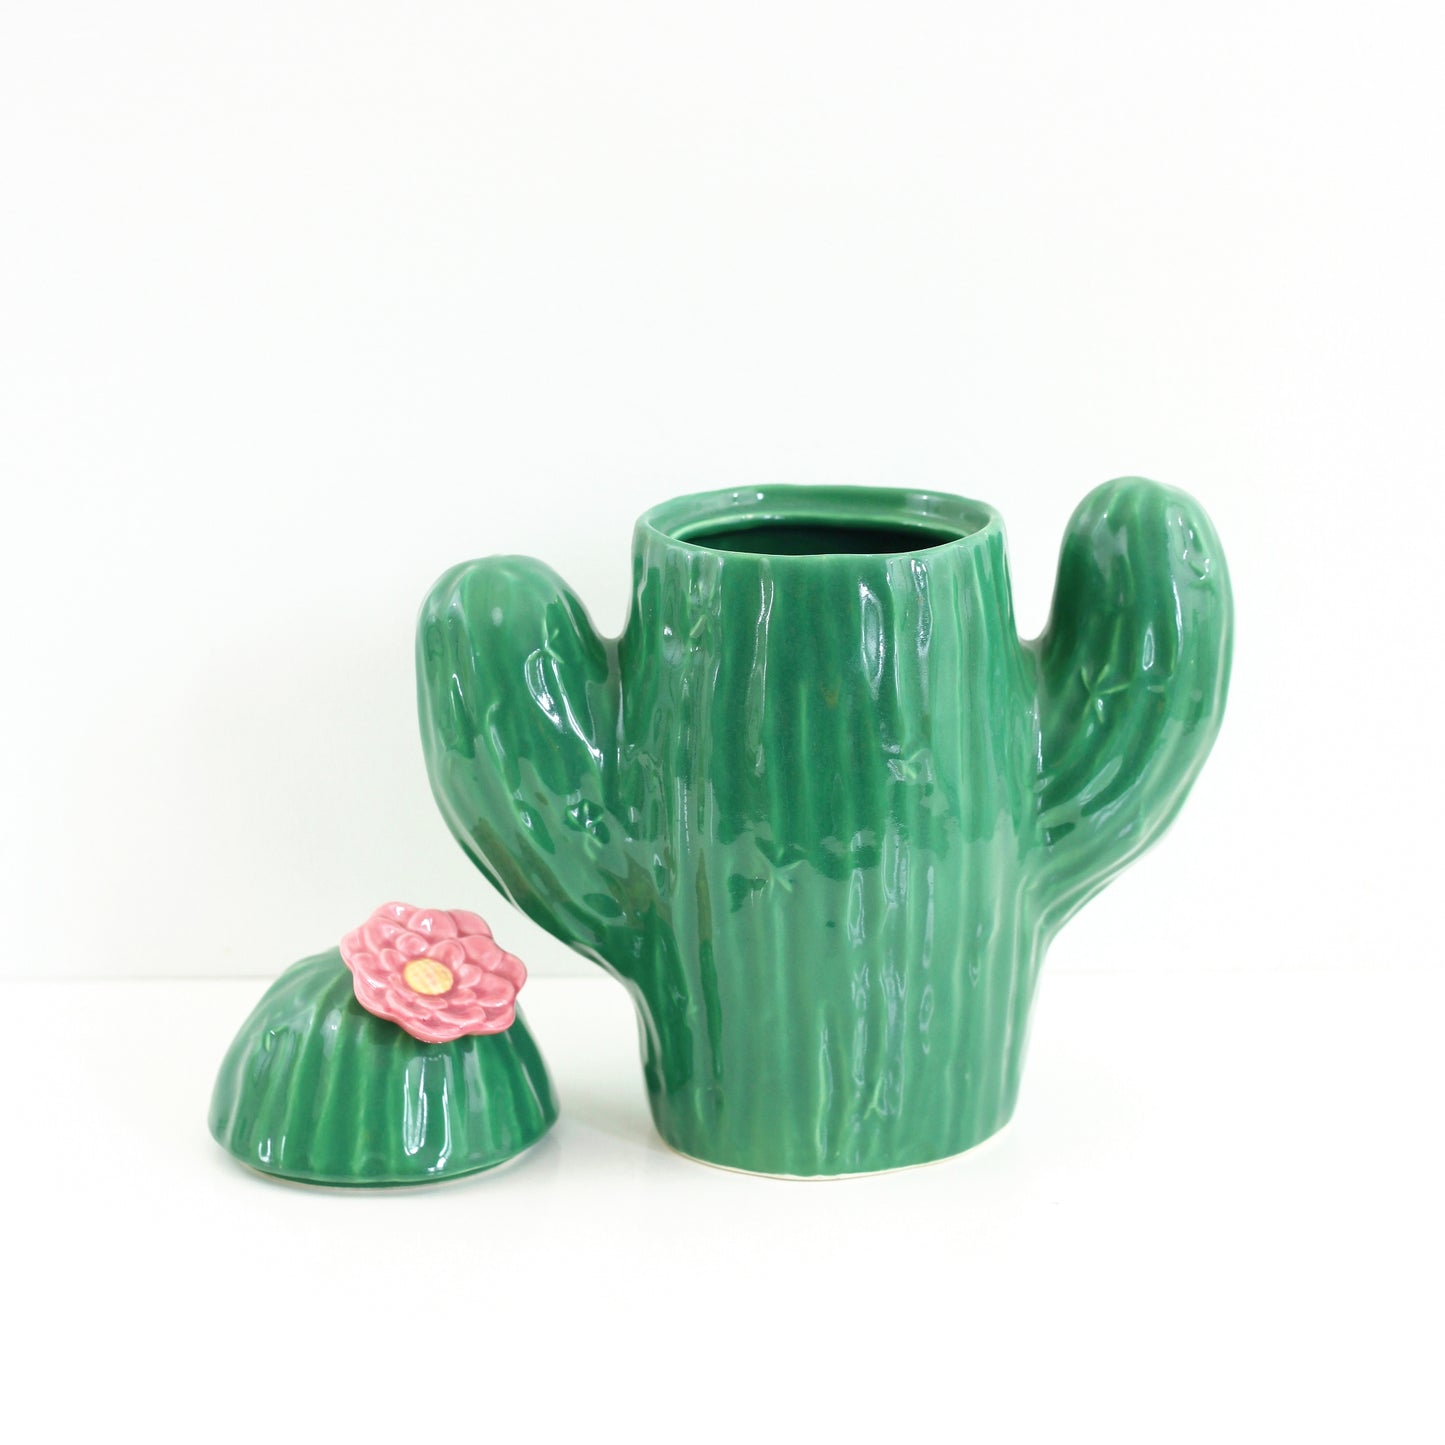 SOLD - Vintage Cactus Cookie Jar by Treasure Craft